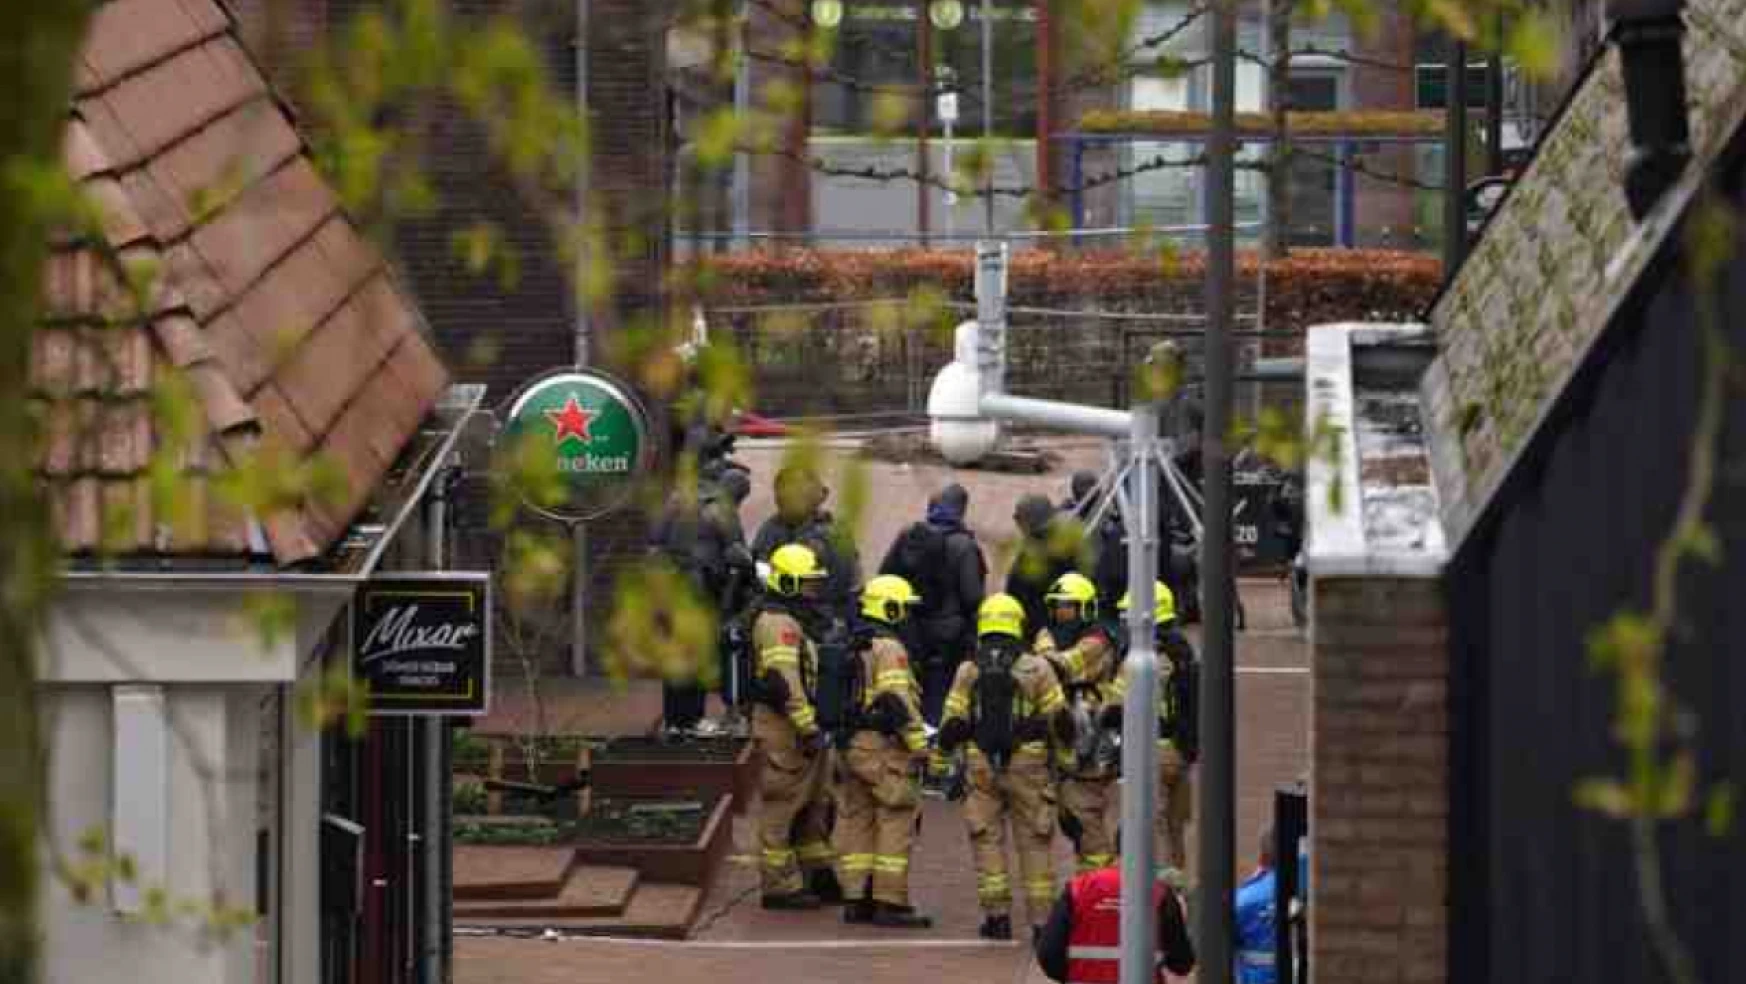 Hollanda'nın doğusunda bulunan Ede'de bir kafede çok sayıda kişinin rehin alındığı bildirildi. Polisin, bölgedeki evleri tahliye ettiği açıklandı.